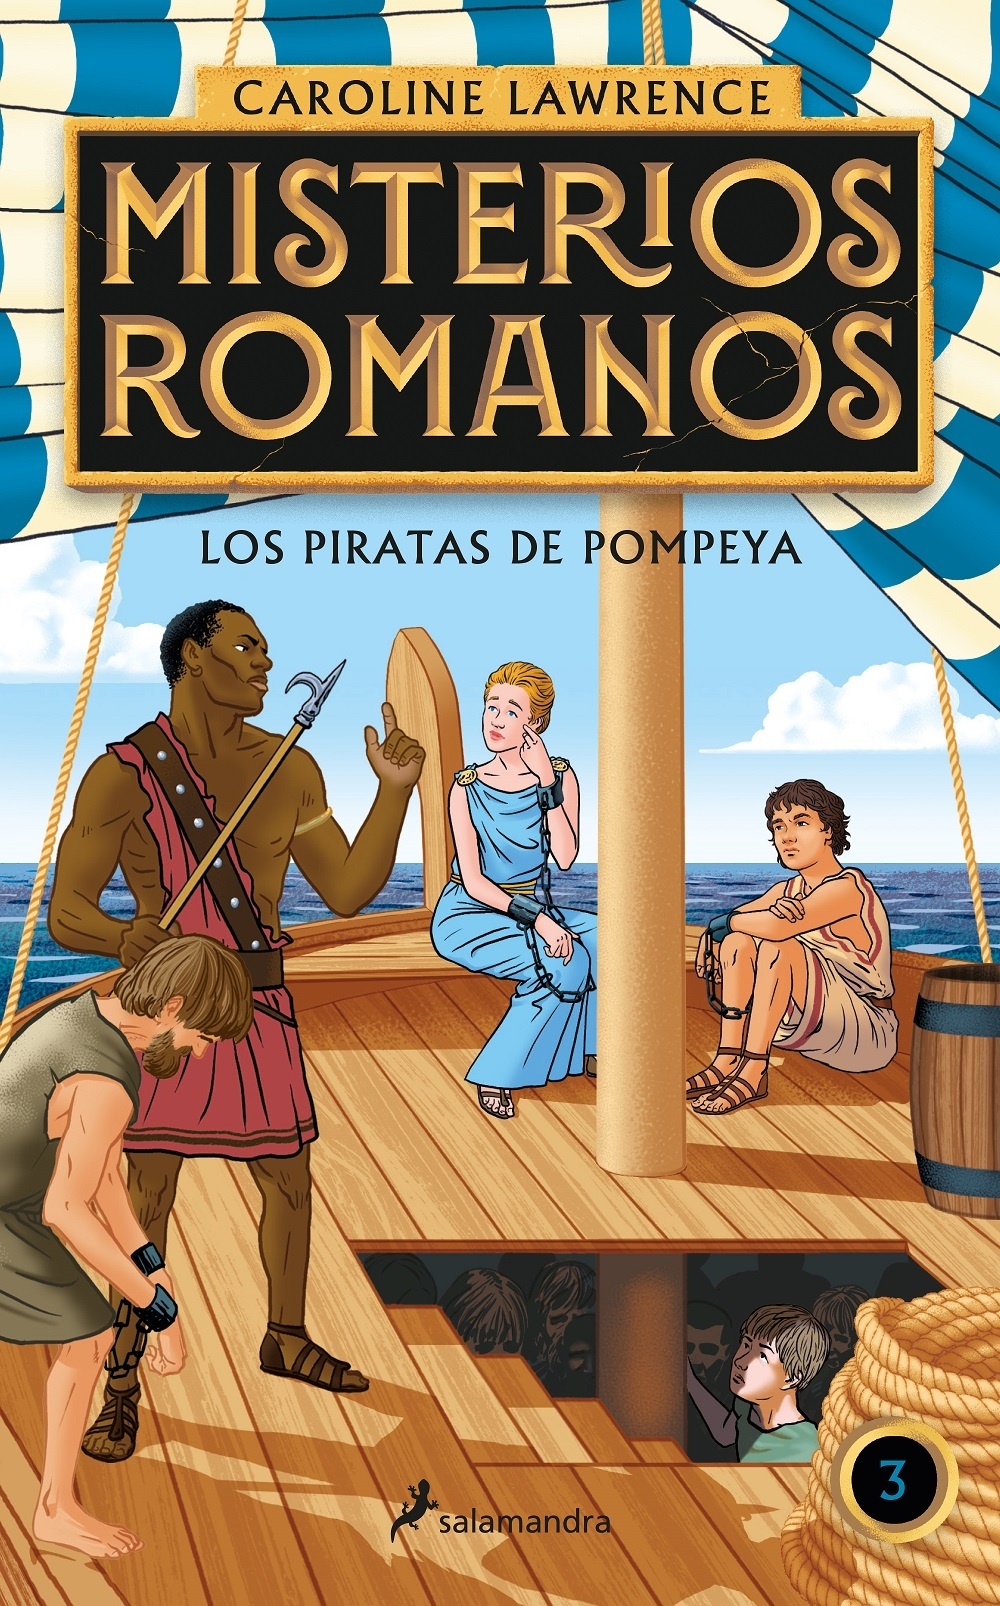 Piratas de Pompeya, Los "Misterios romanos III". 